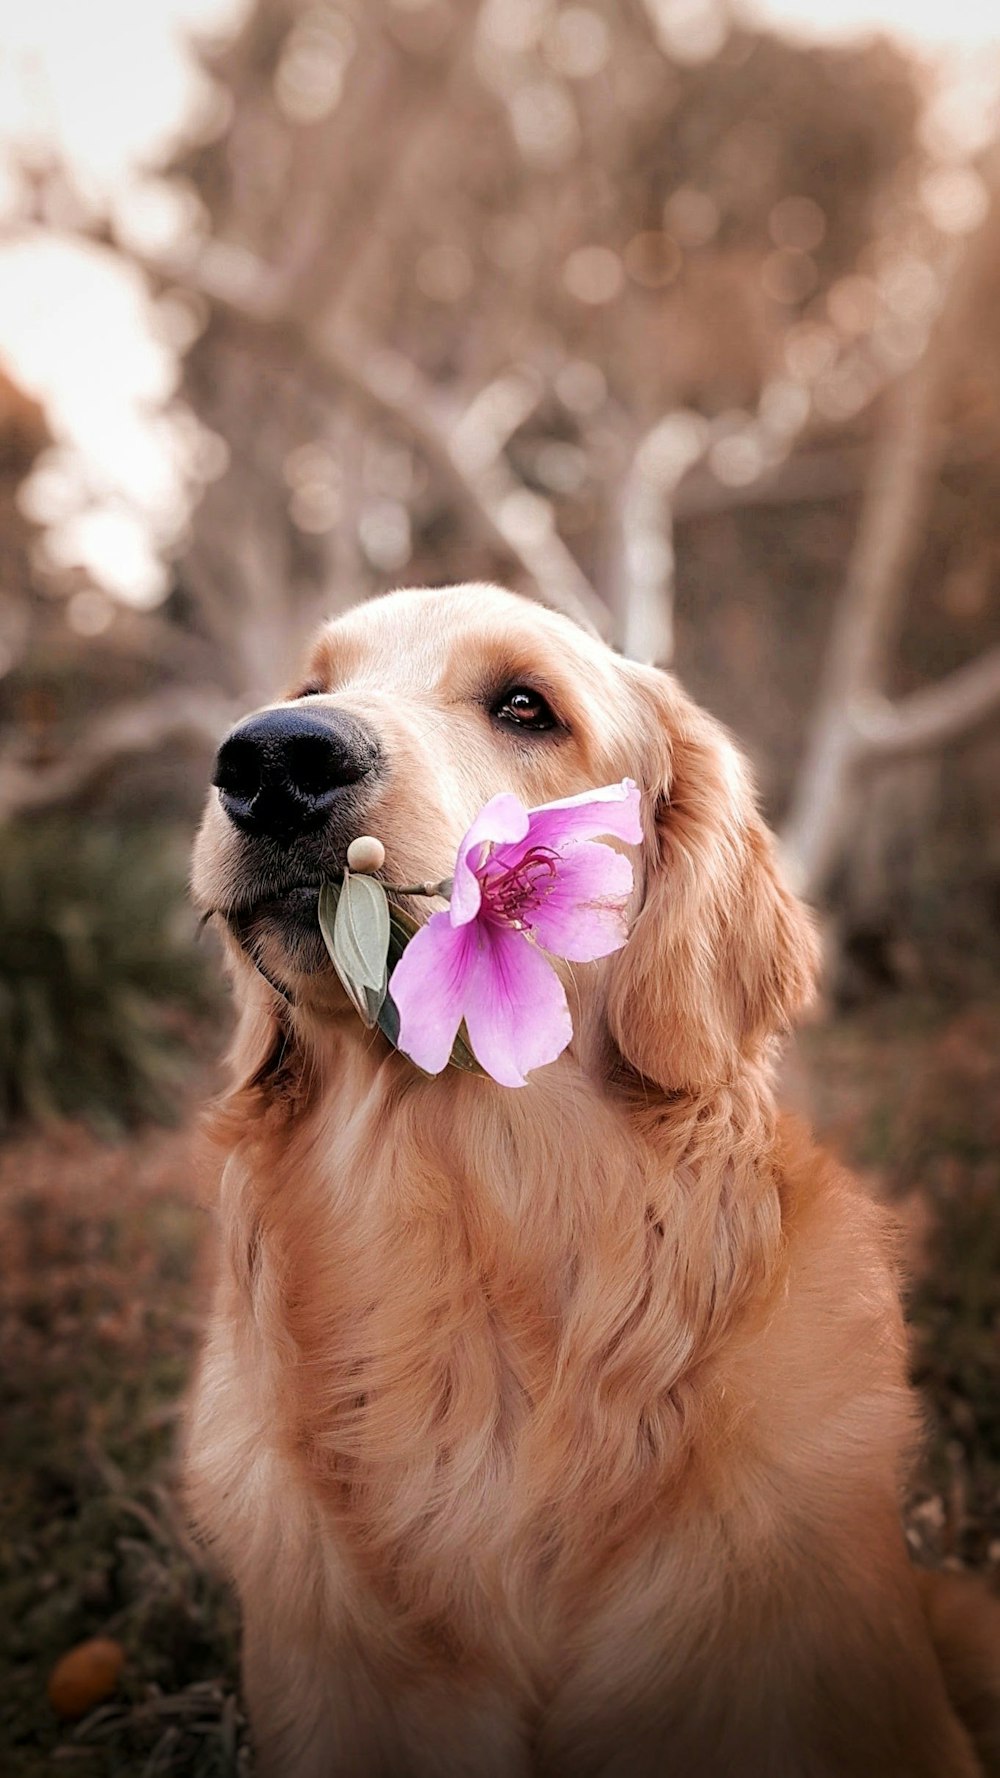 Dog holding flower photo – Free Dog Image on Unsplash